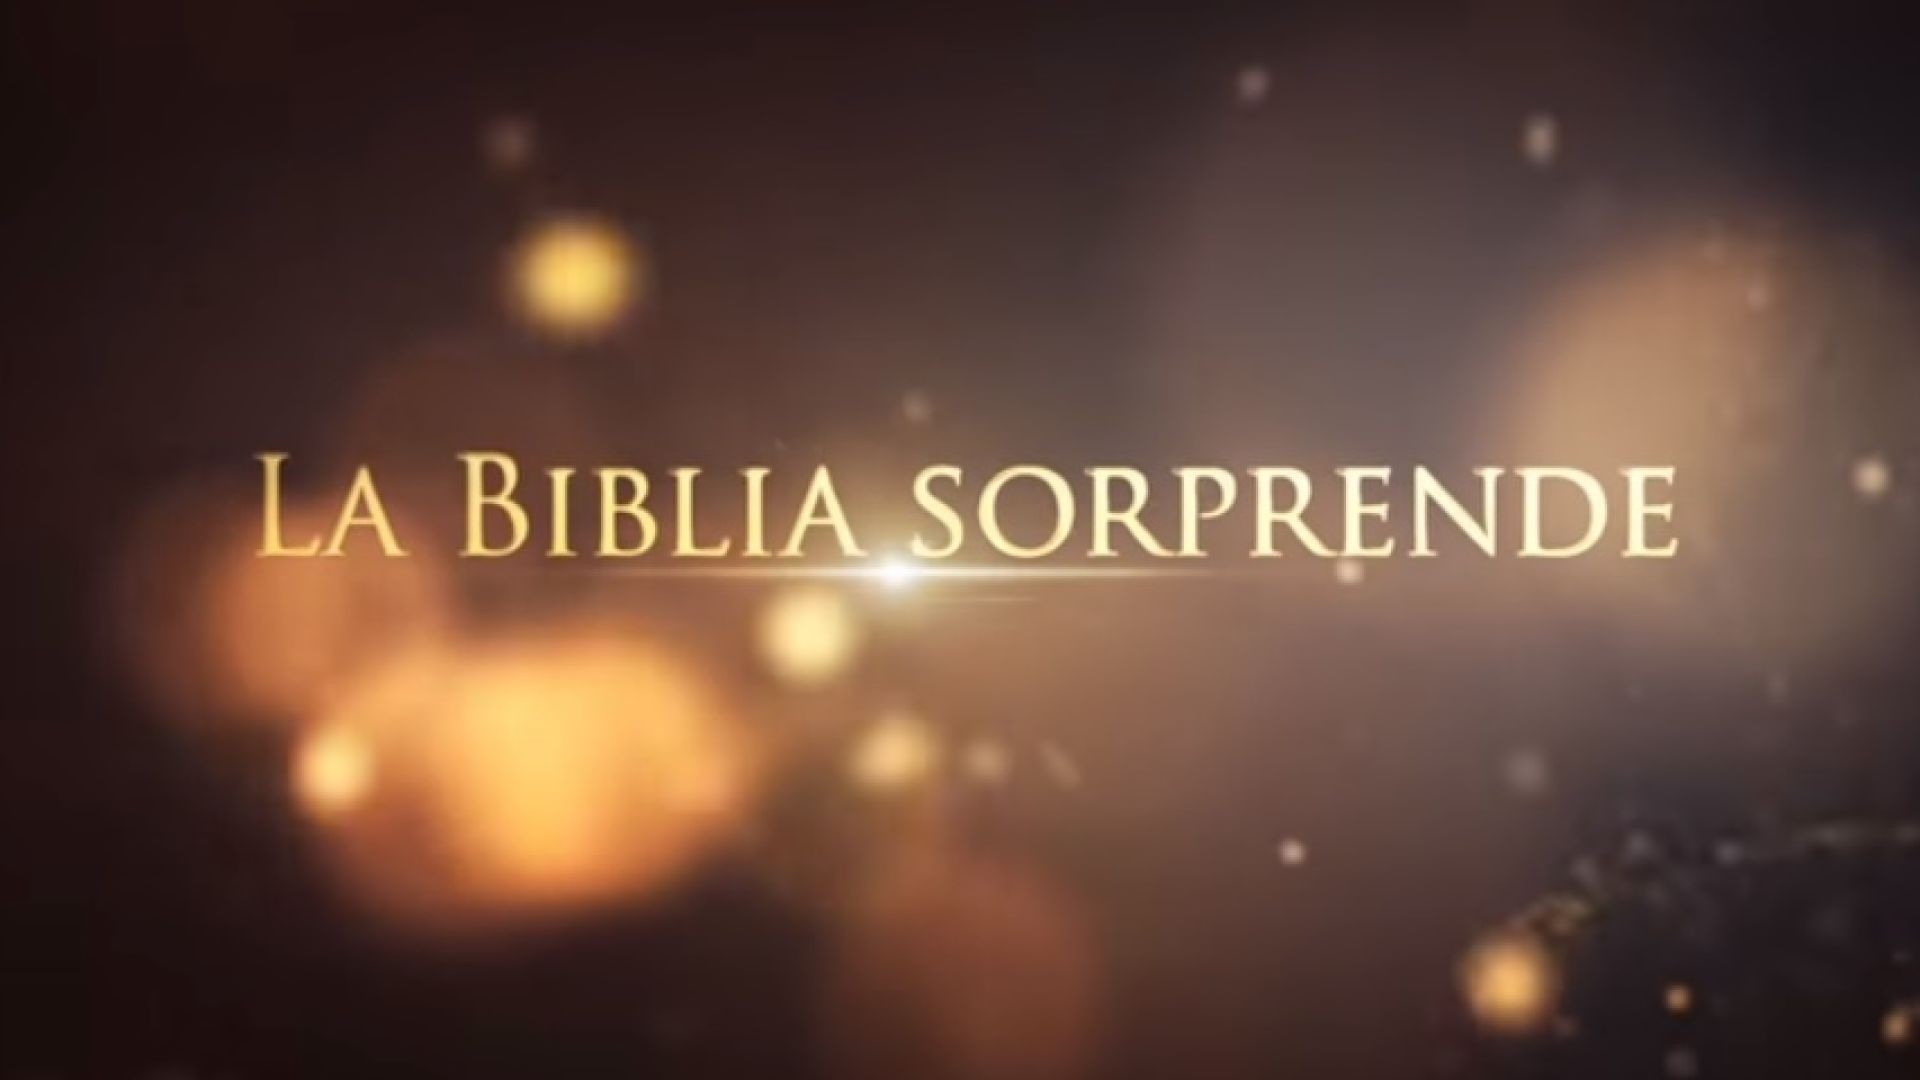 19 Roma en la profecía | La Biblia Sorprende 1ra temporada - Juan Surroca